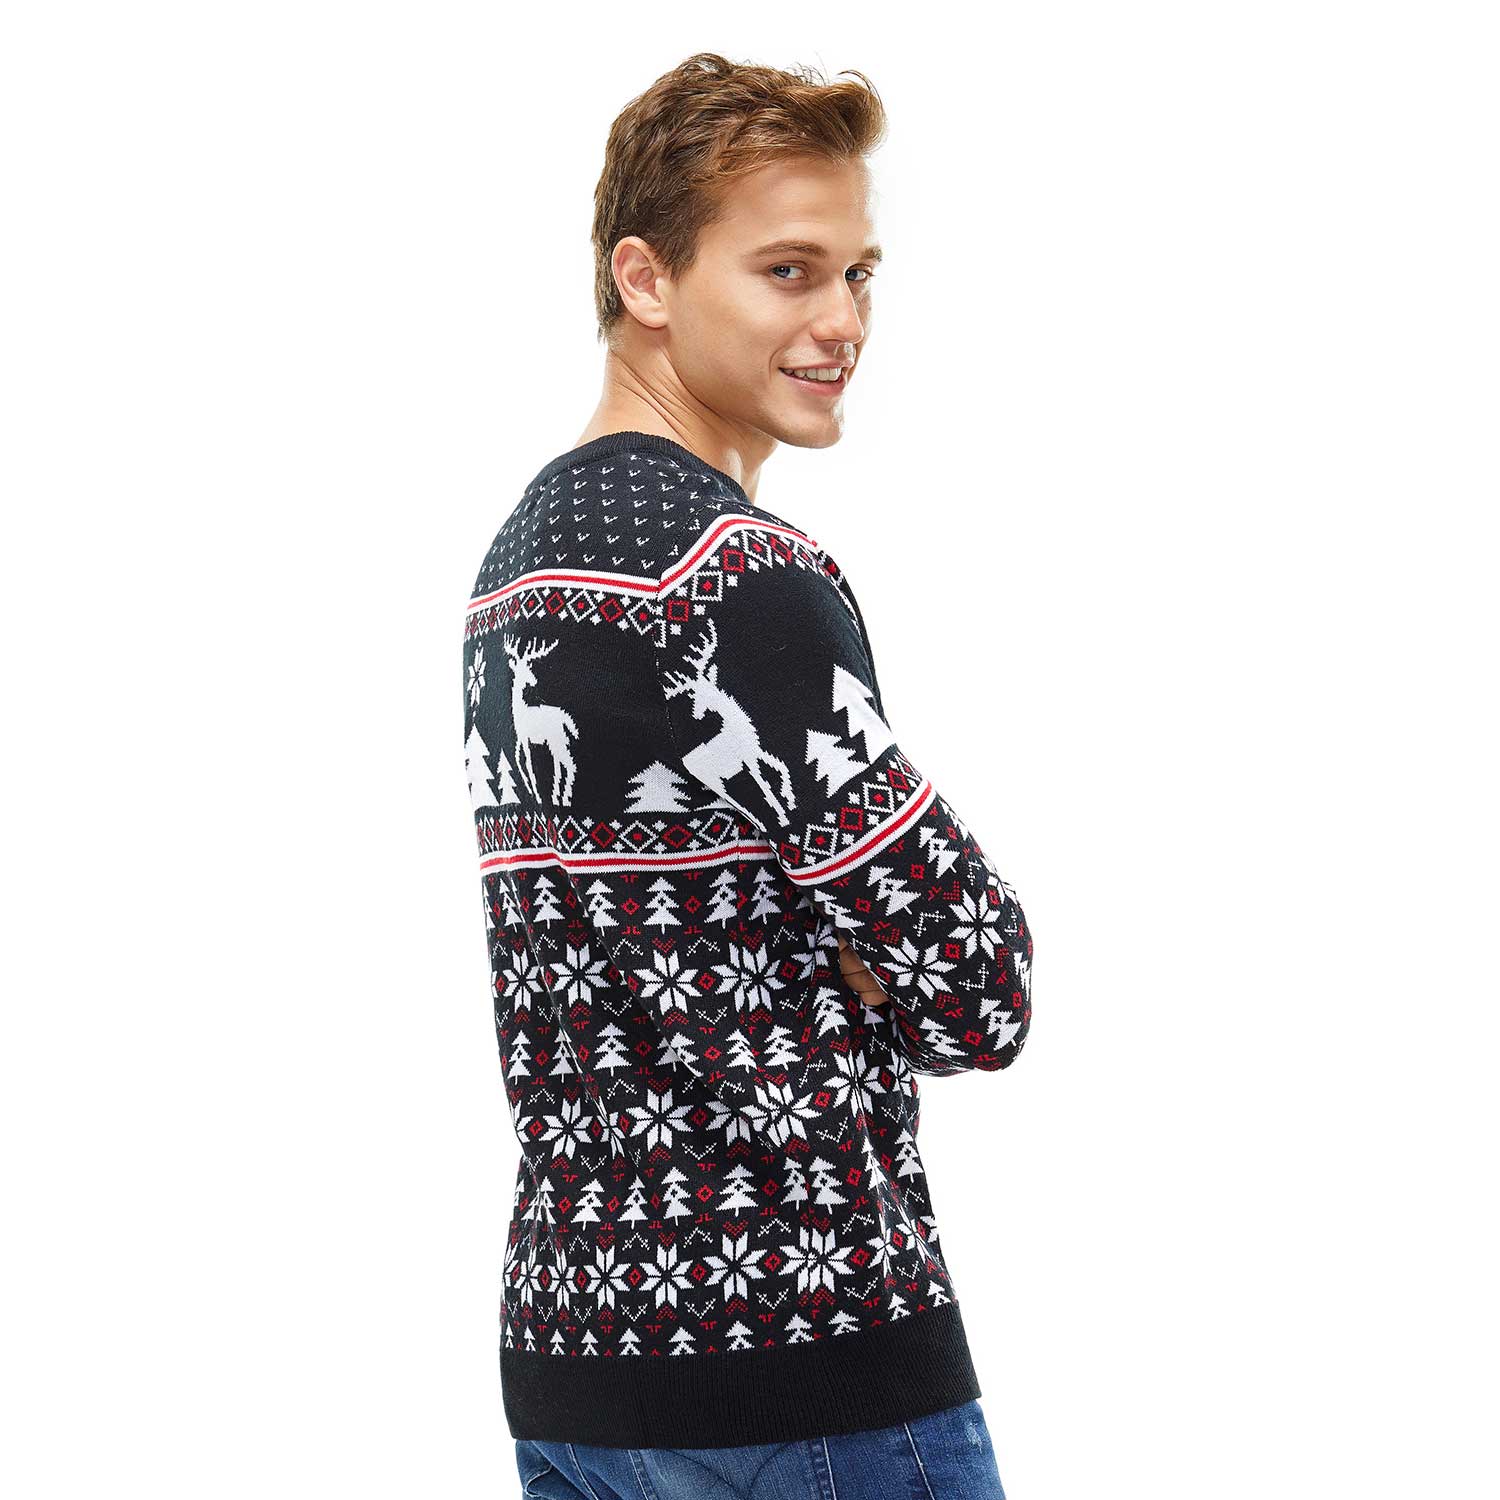 Reindeer and Snowflakes on Fleek Black Mens Funny Christmas Sweater